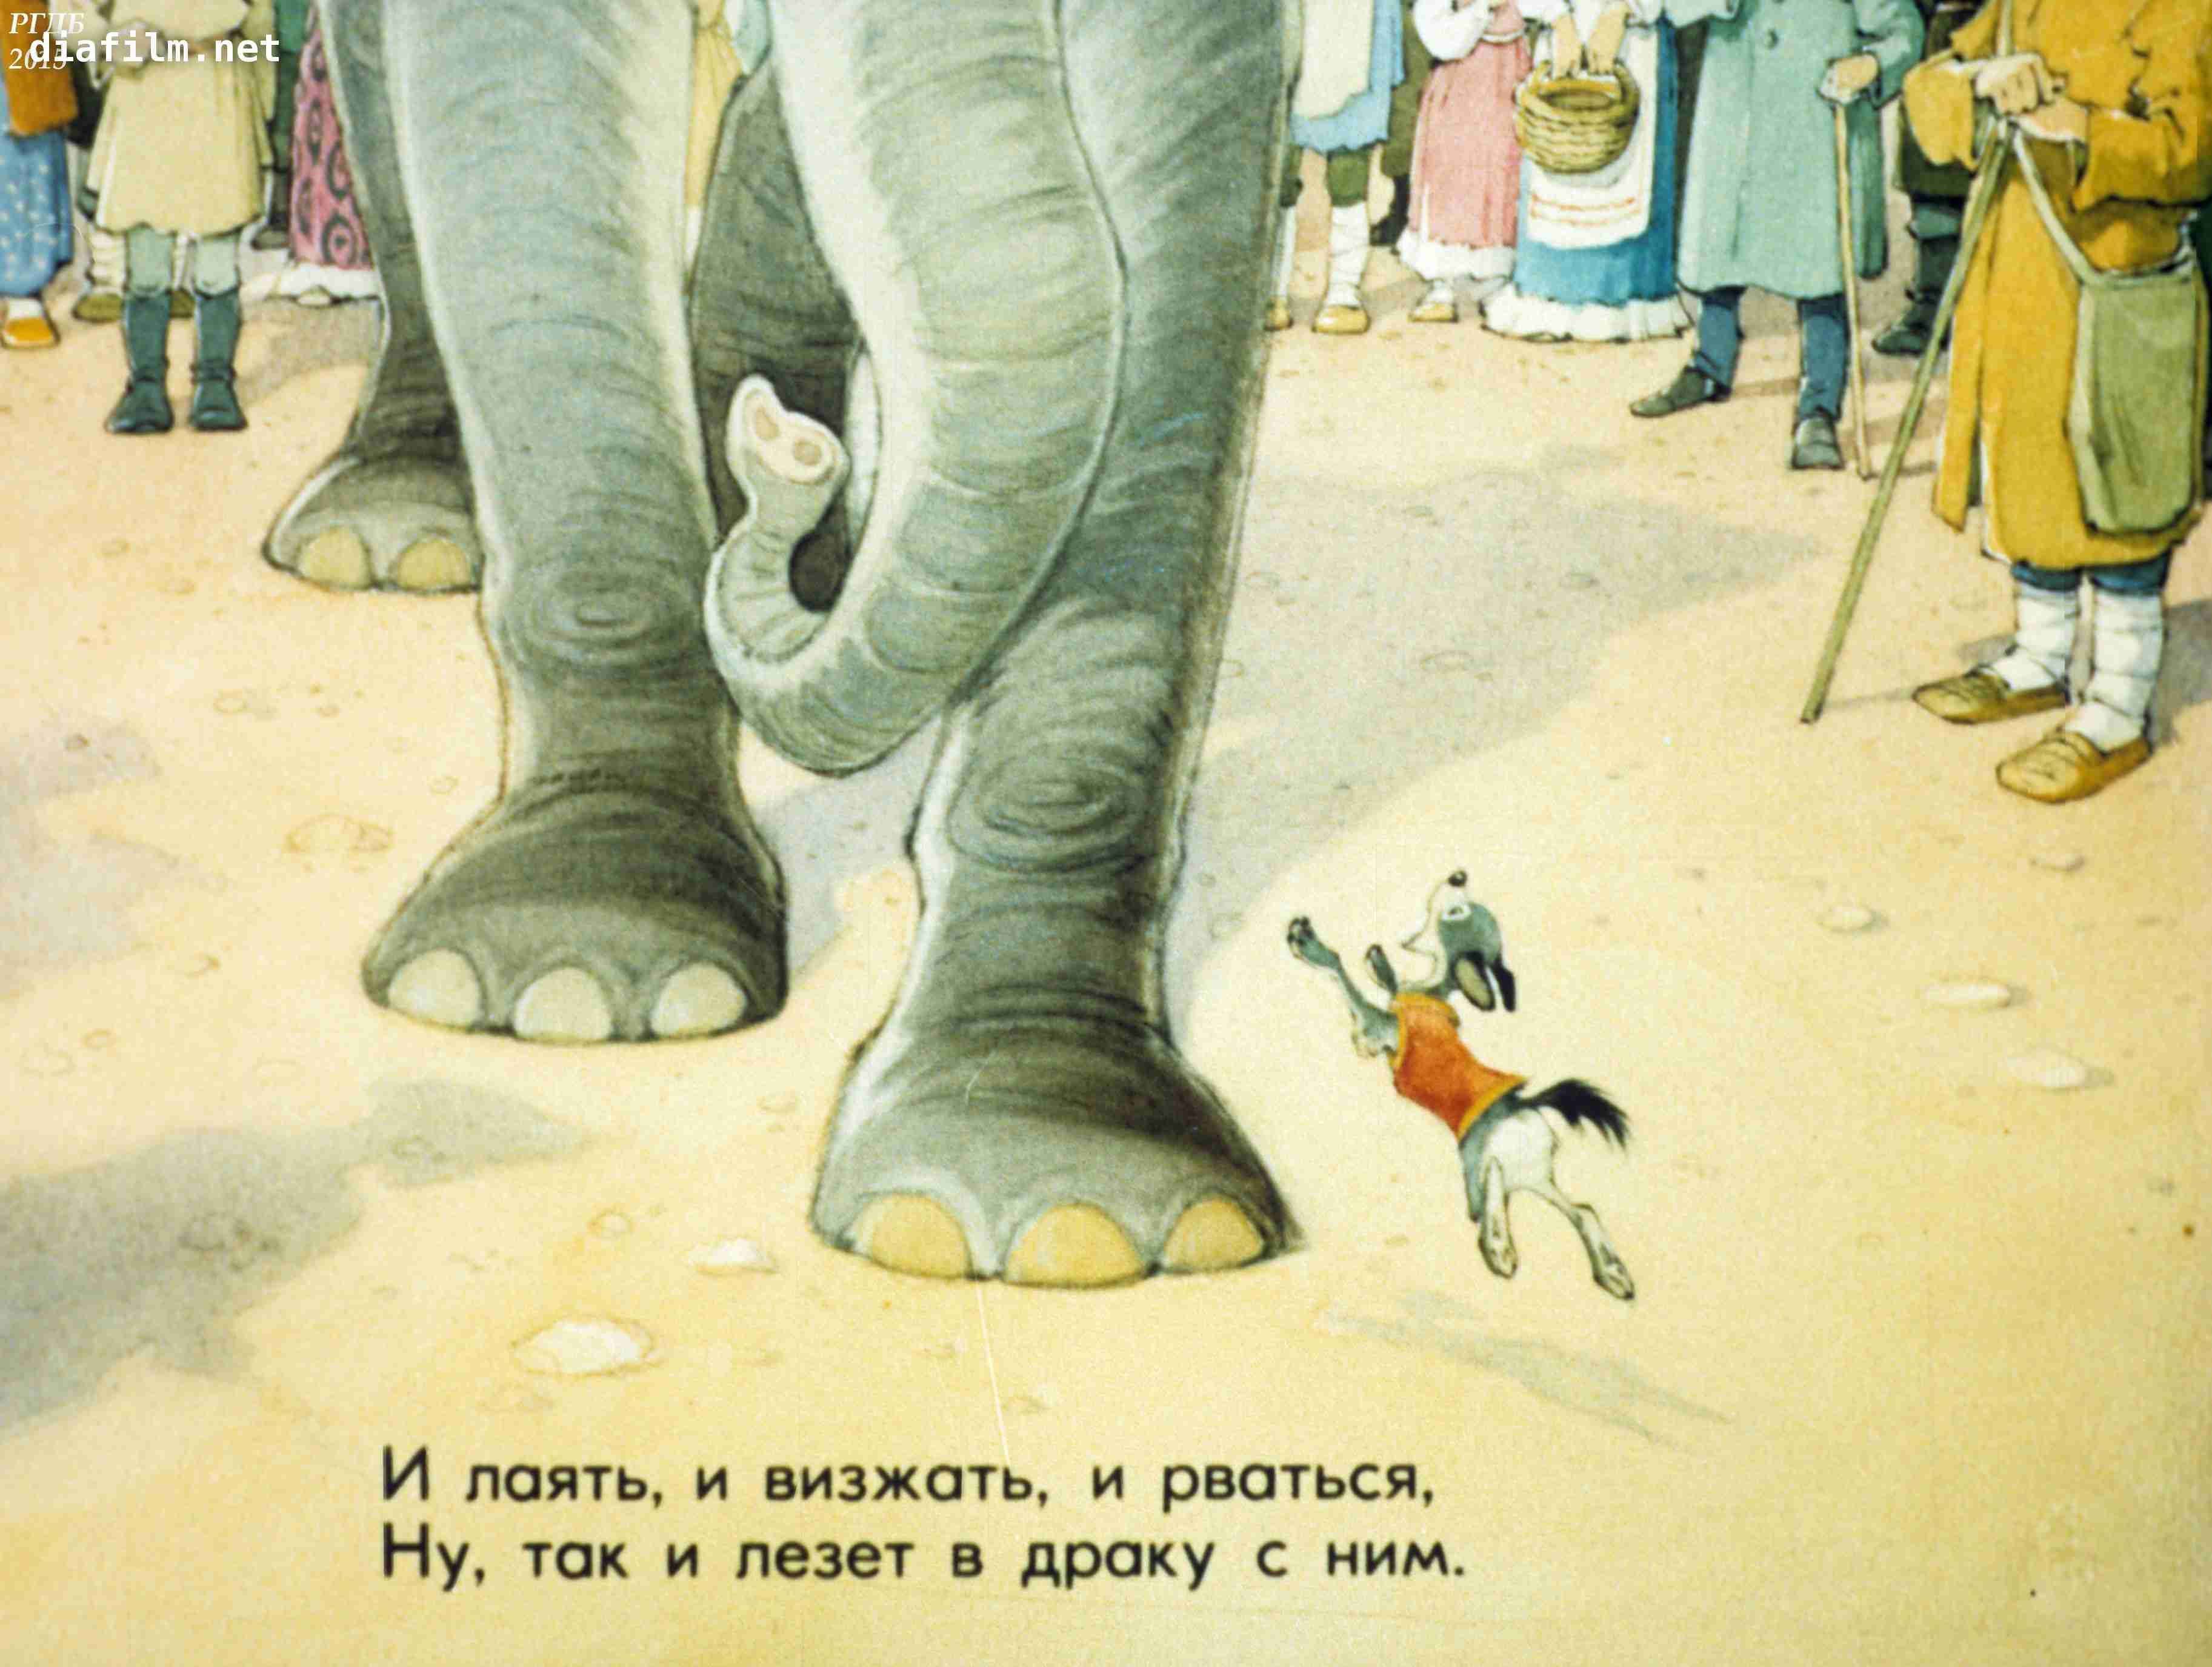 Знать она сильна. Басня слон и моська Крылов. Моська лает на слона. 1983 Басни слон и моська. Басня Крылова собака и слон.